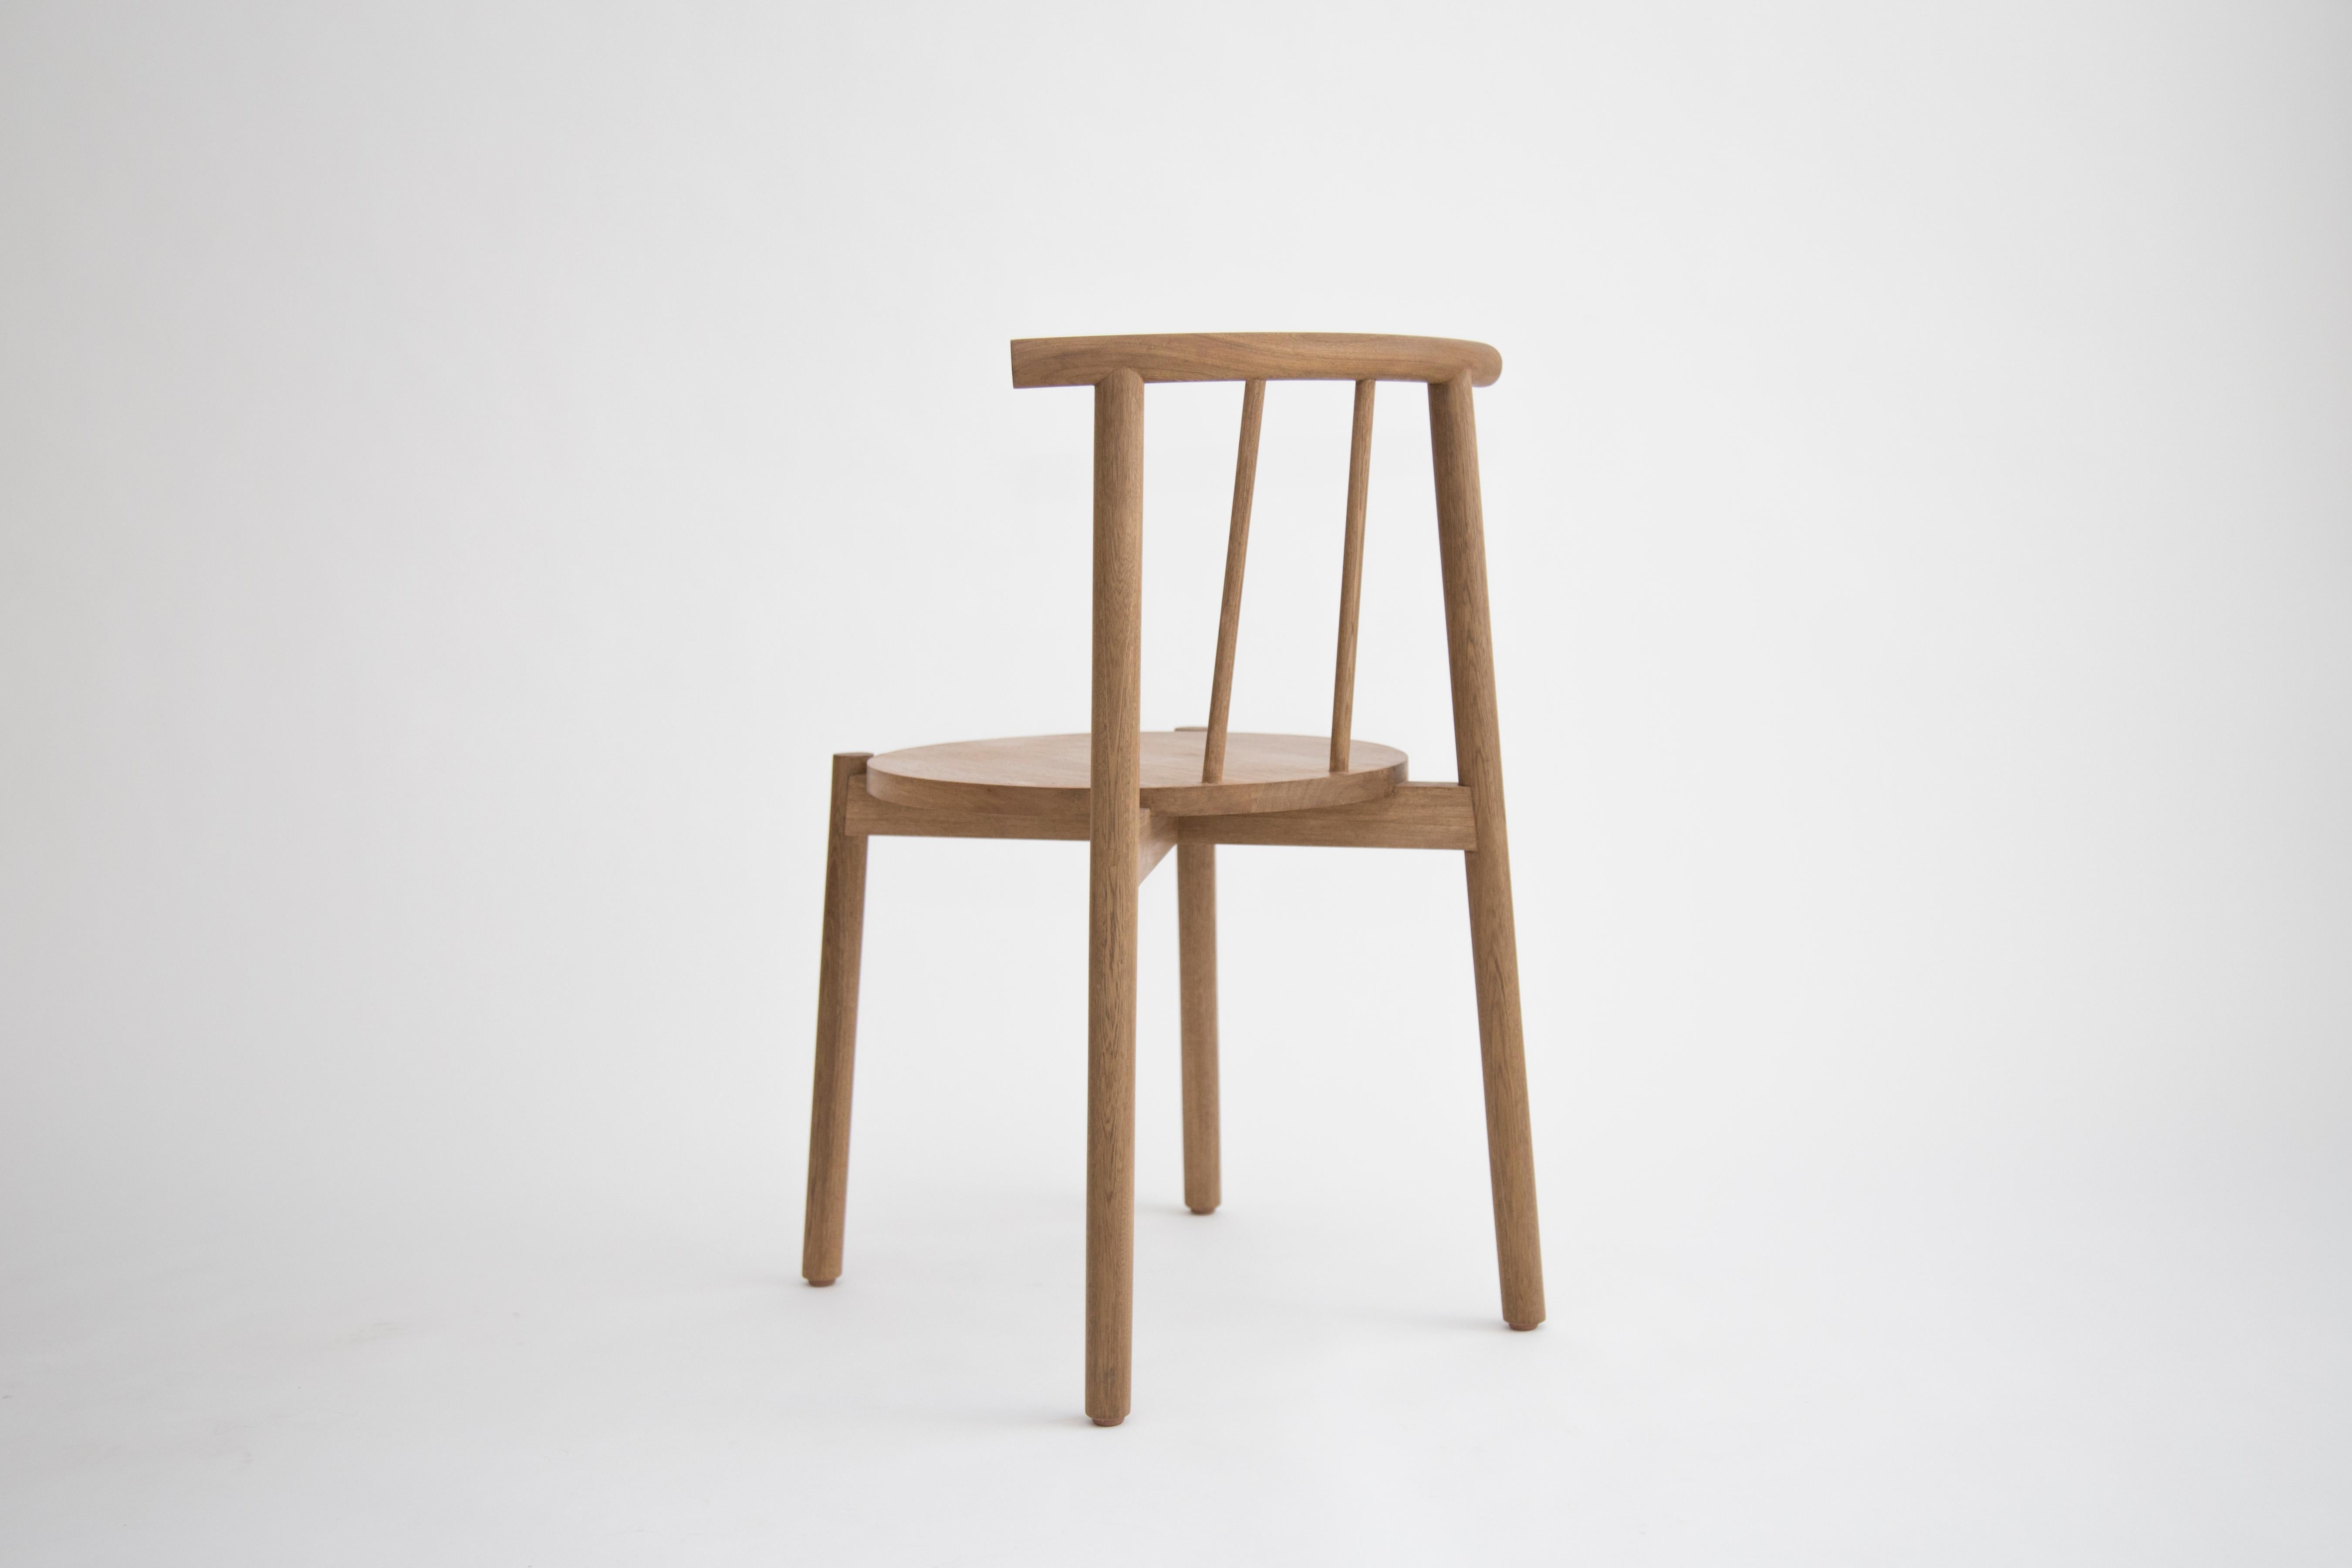 Une chaise pour toutes les occasions, de l'ordinaire à l'extraordinaire. Ce meuble constitue une synthèse de la structure et de la forme, toutes deux remarquables par leur clarté constructive et leur beauté silencieuse. 

Fabriquée en bois de